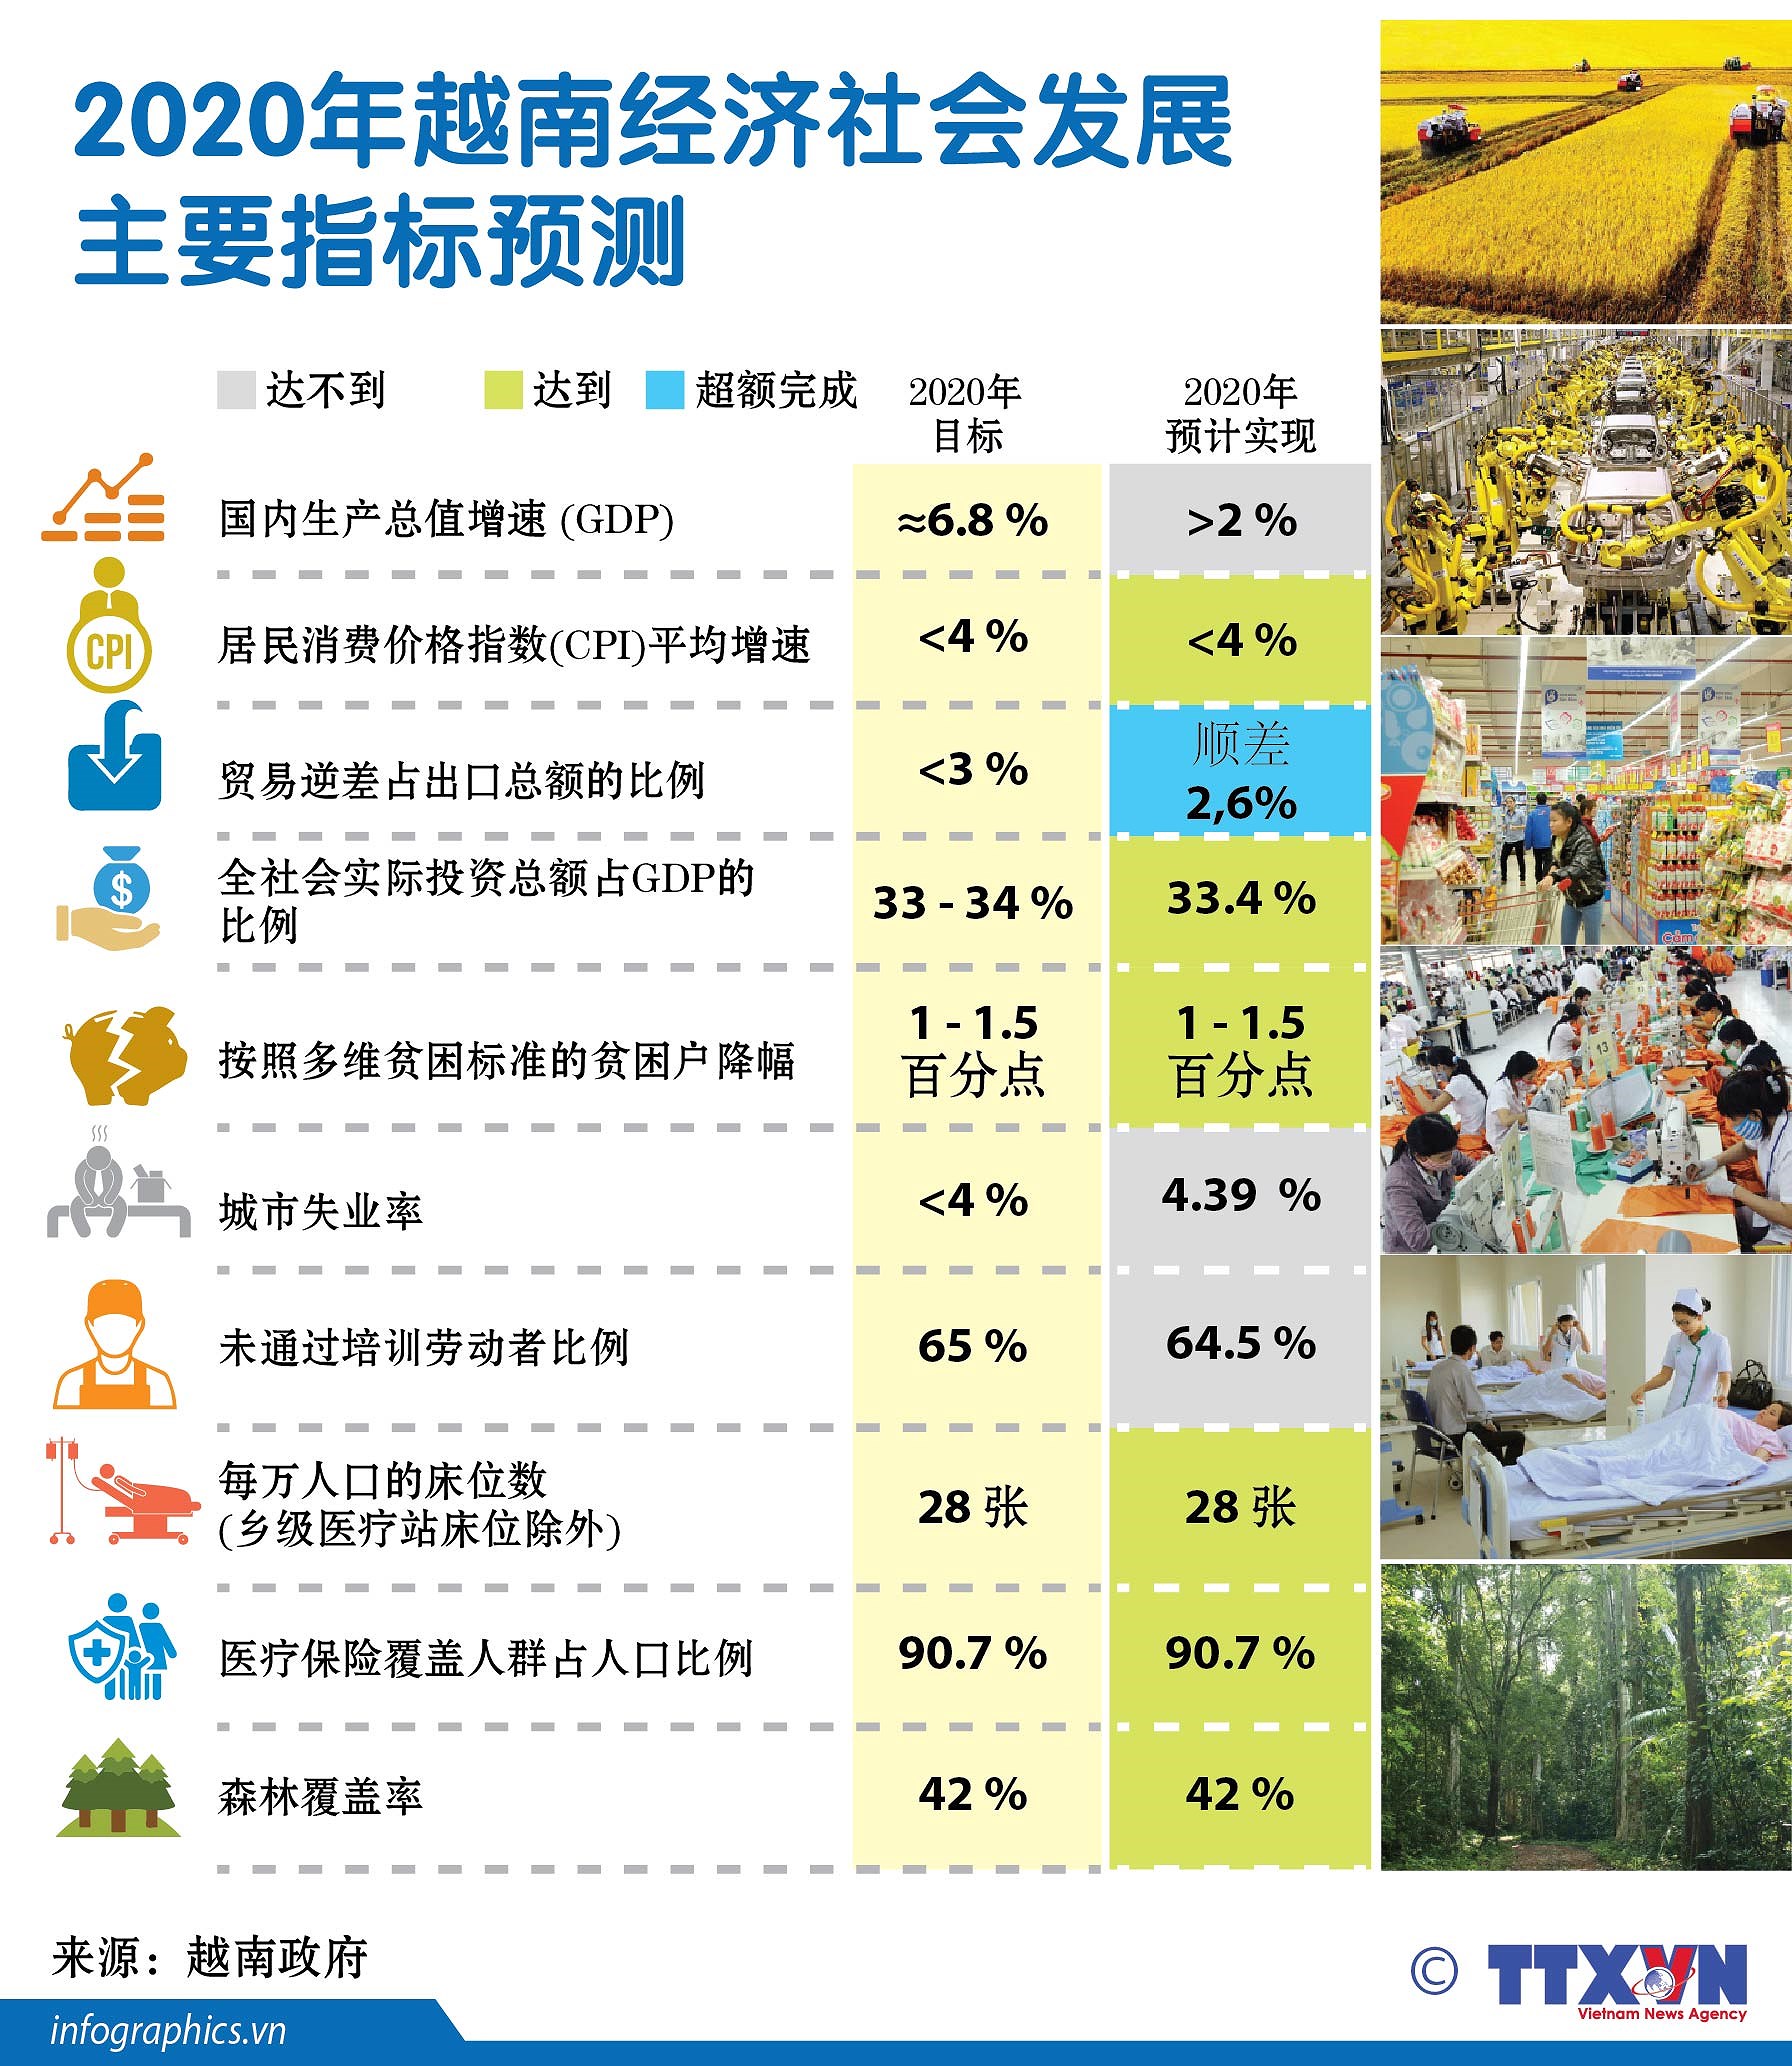 图表新闻：2020年越南经济社会发展主要指标预测 hinh anh 1